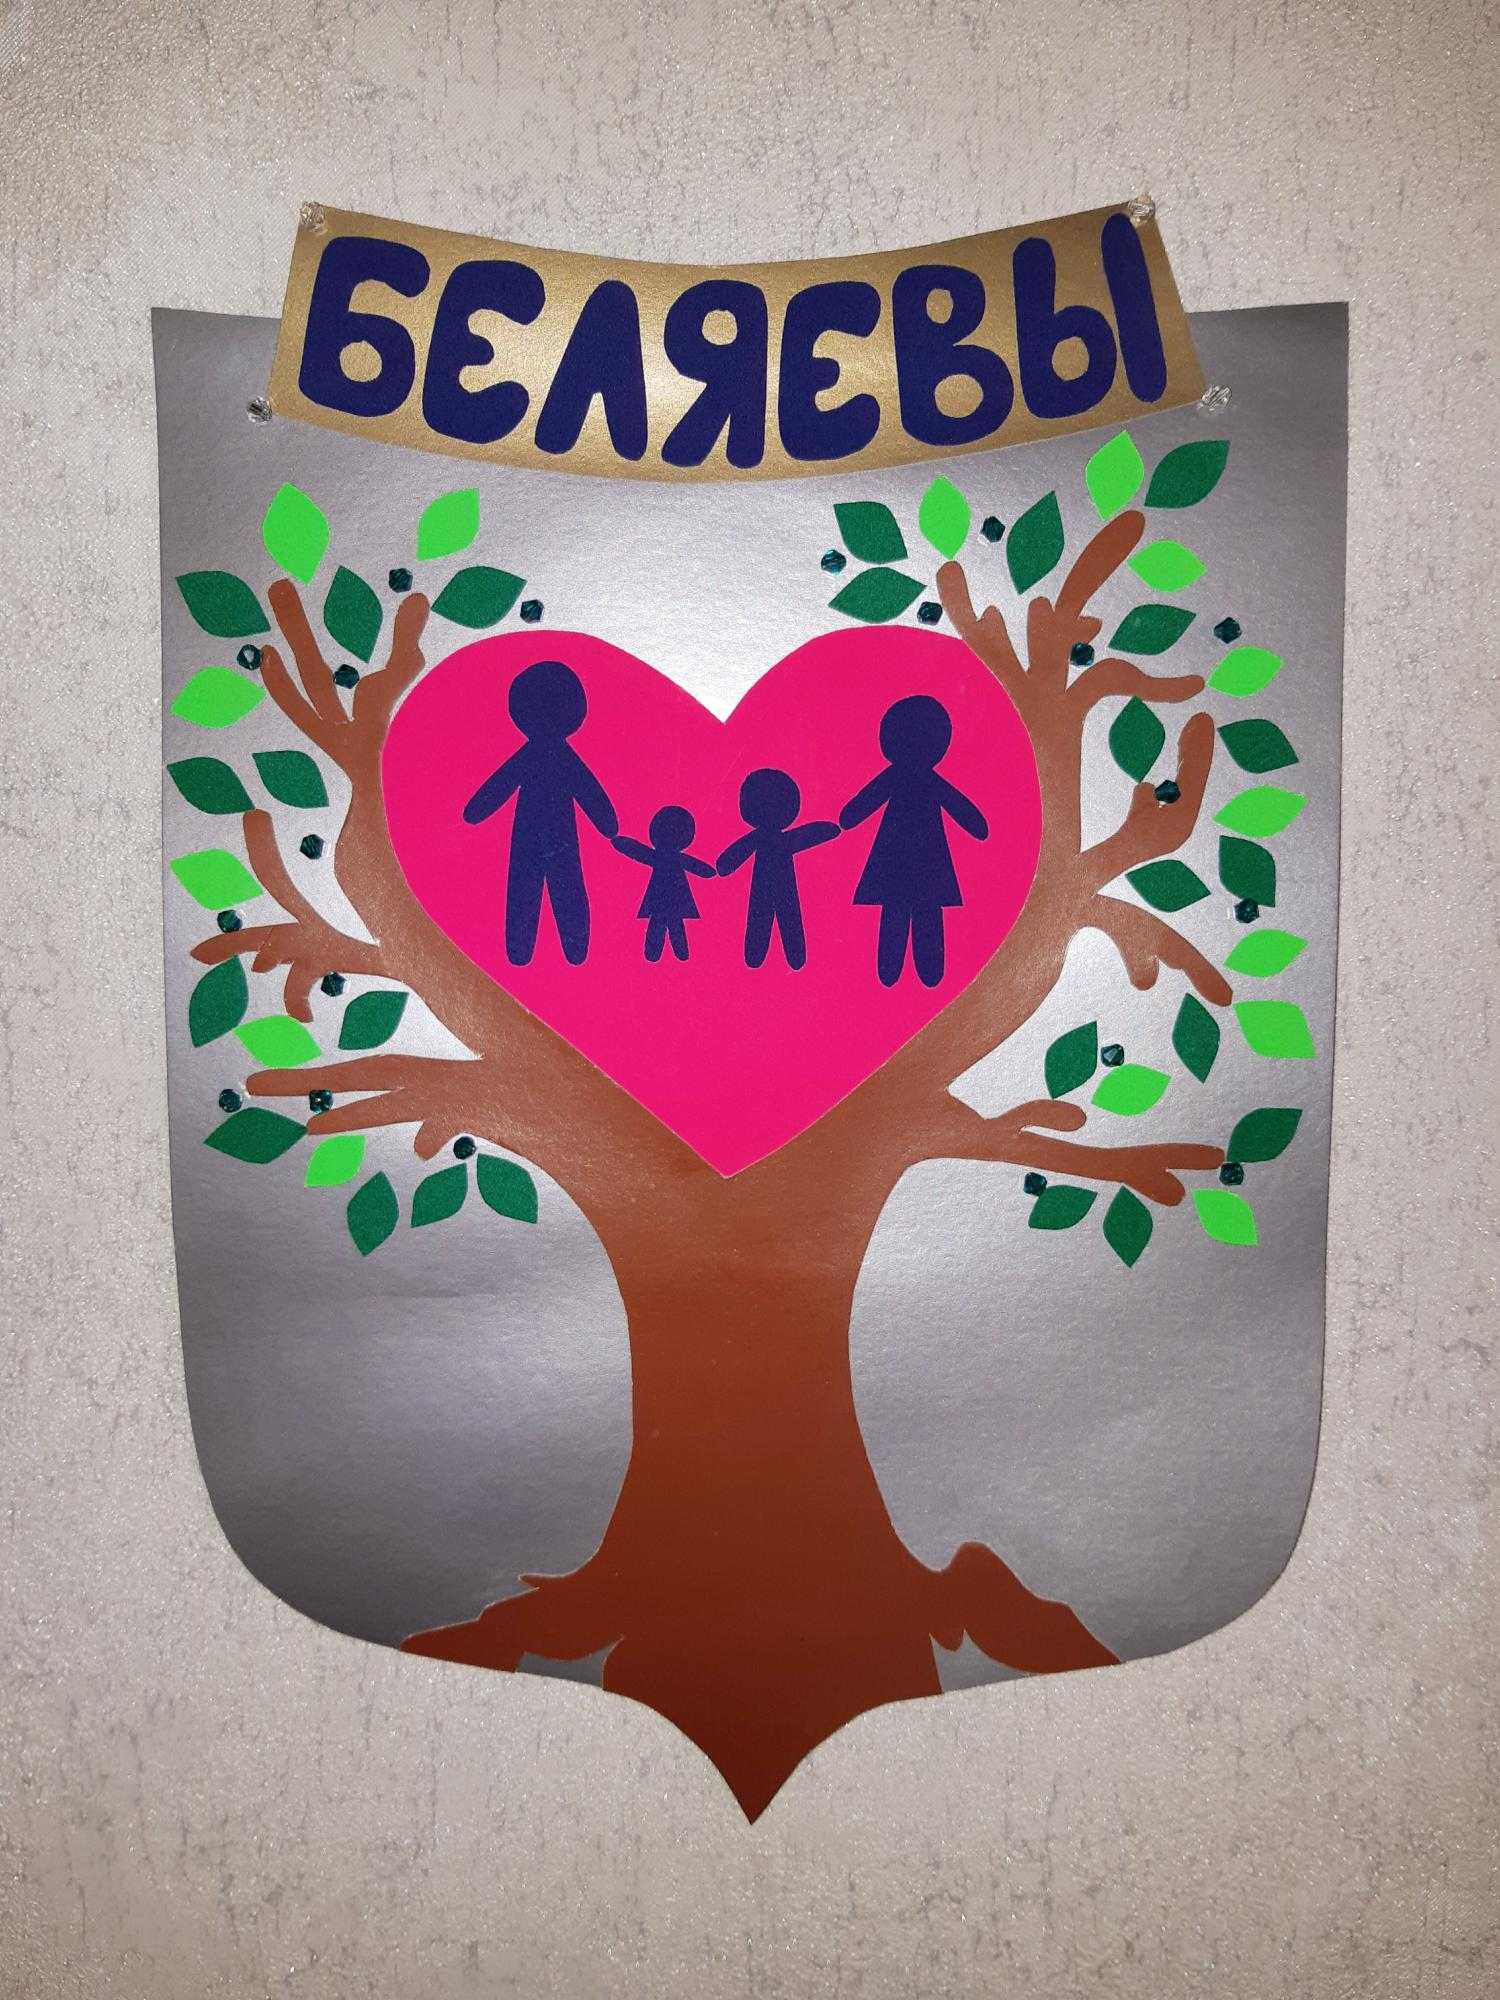 Как создать фамильный герб семьи? | культура | школажизни.ру